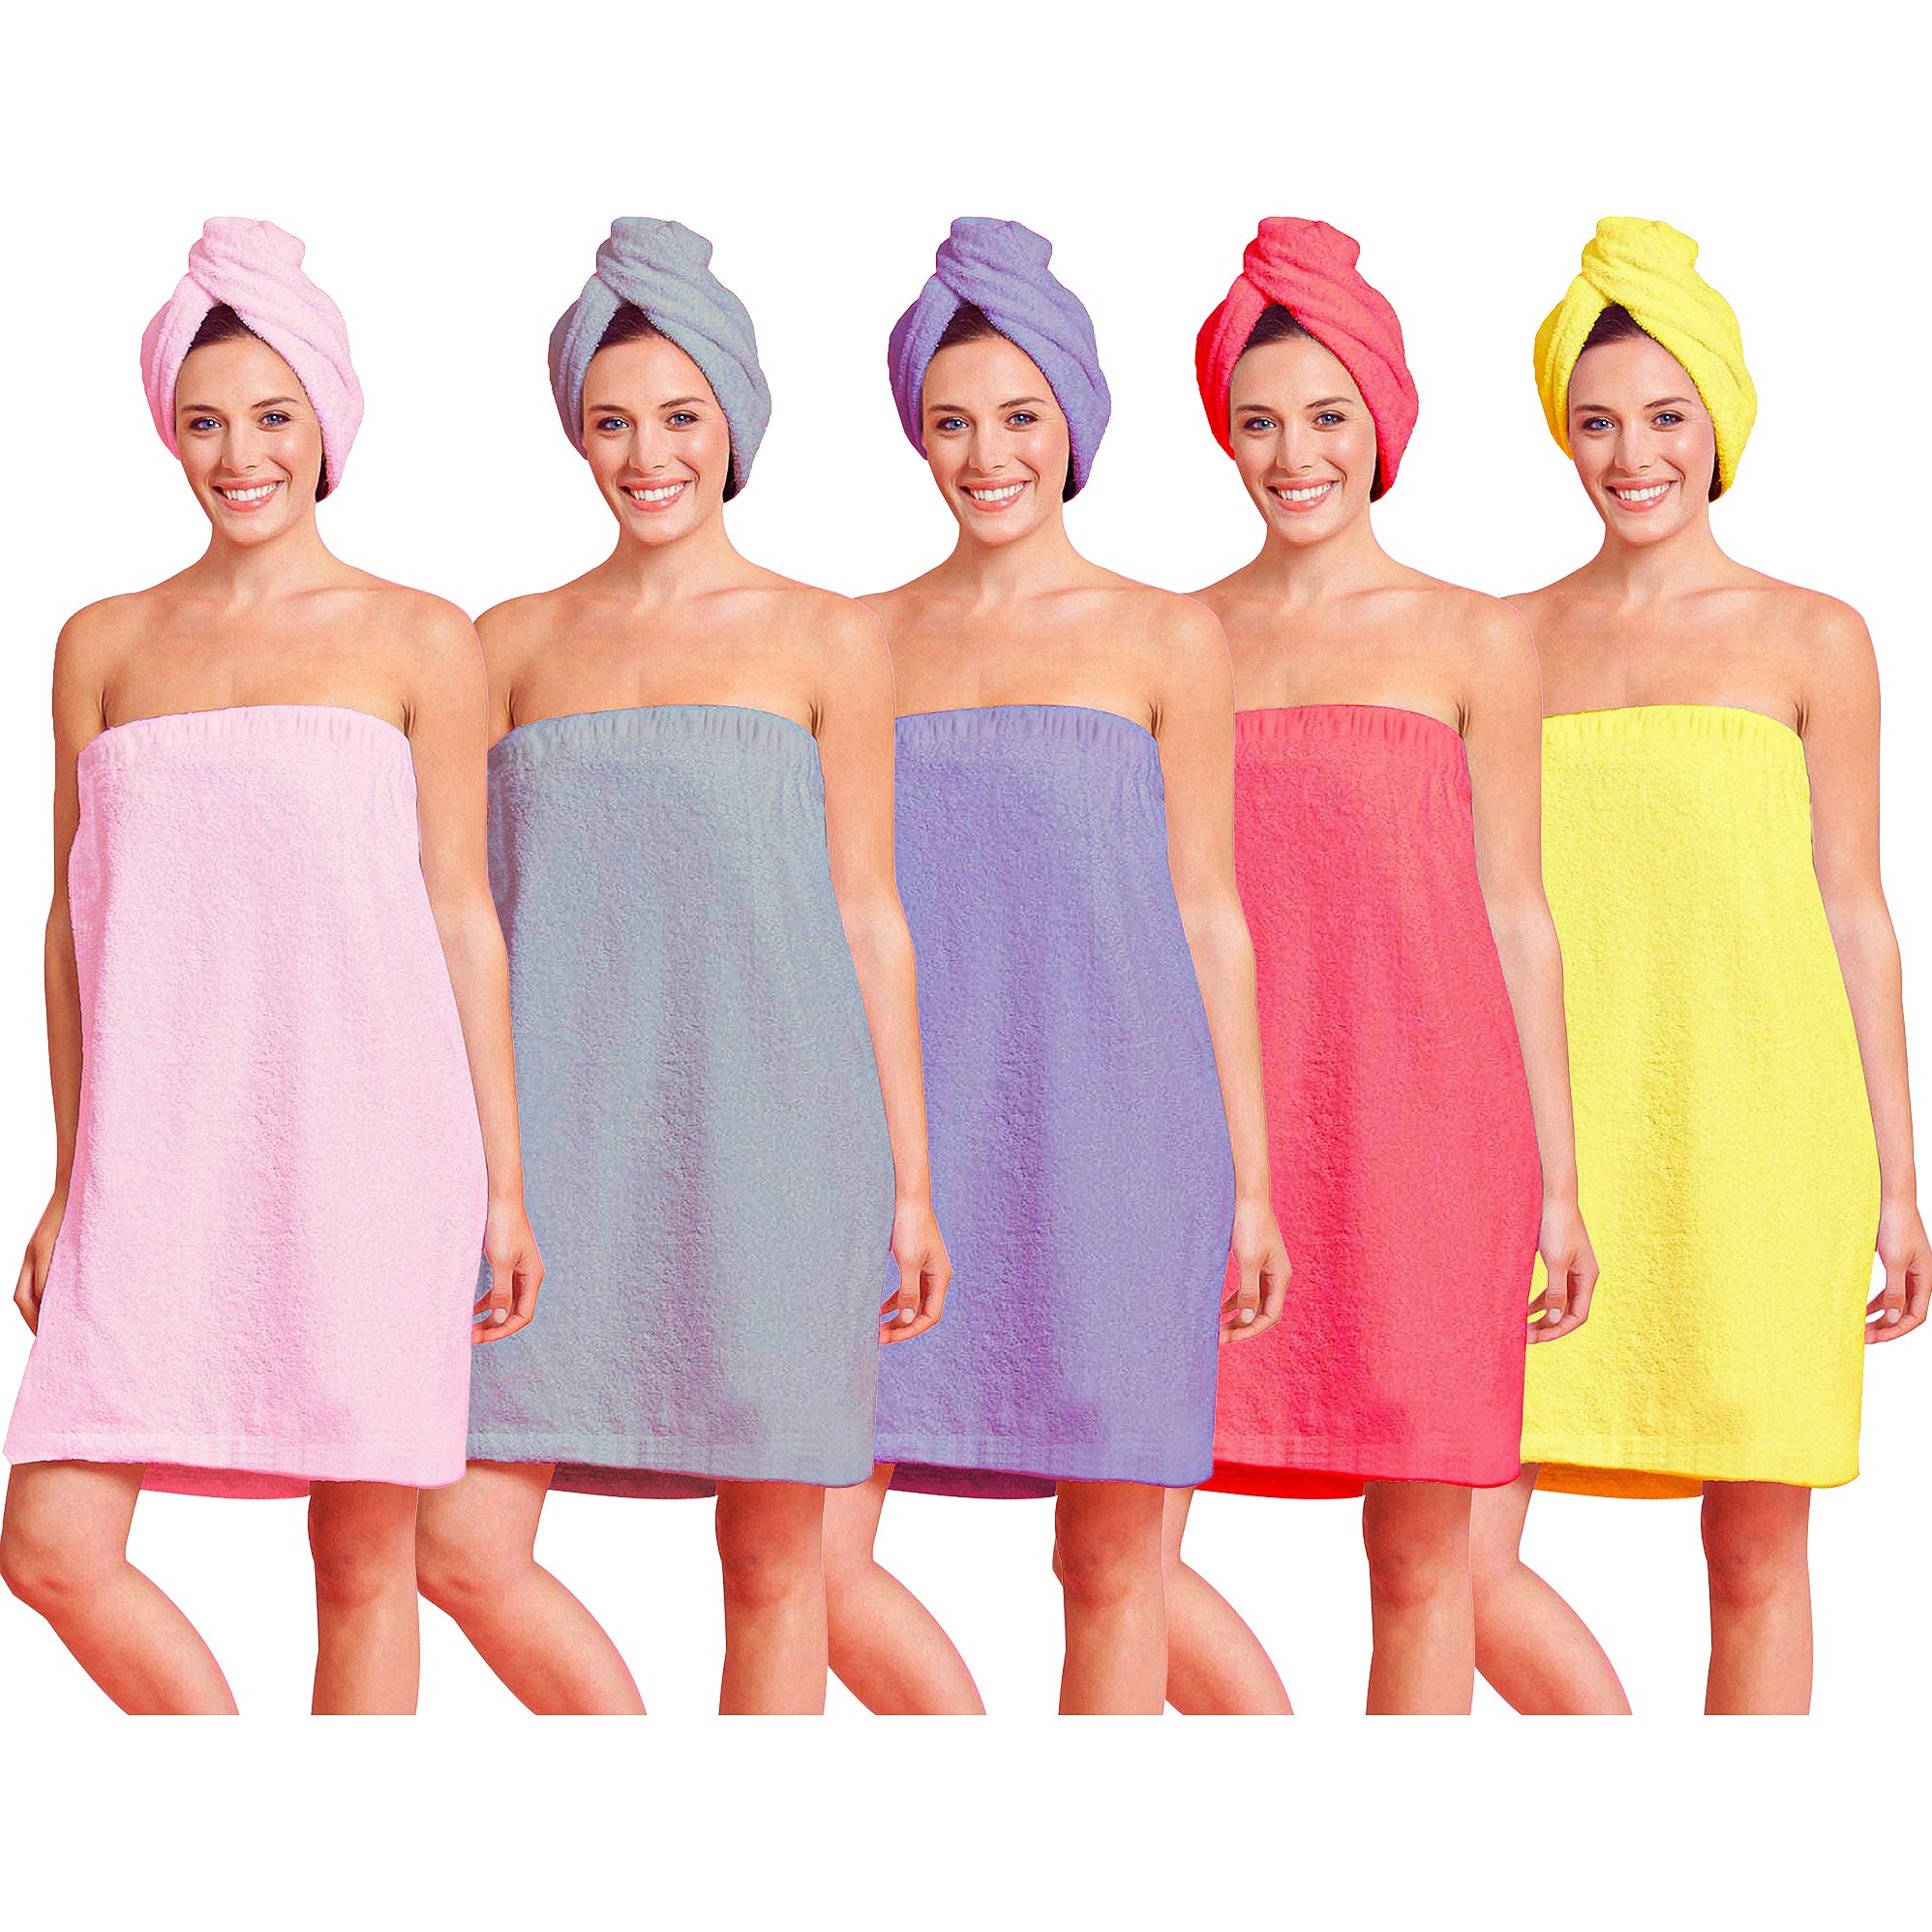 2-Piece Women's Spa Body Wrap & Hair Towel - Grey